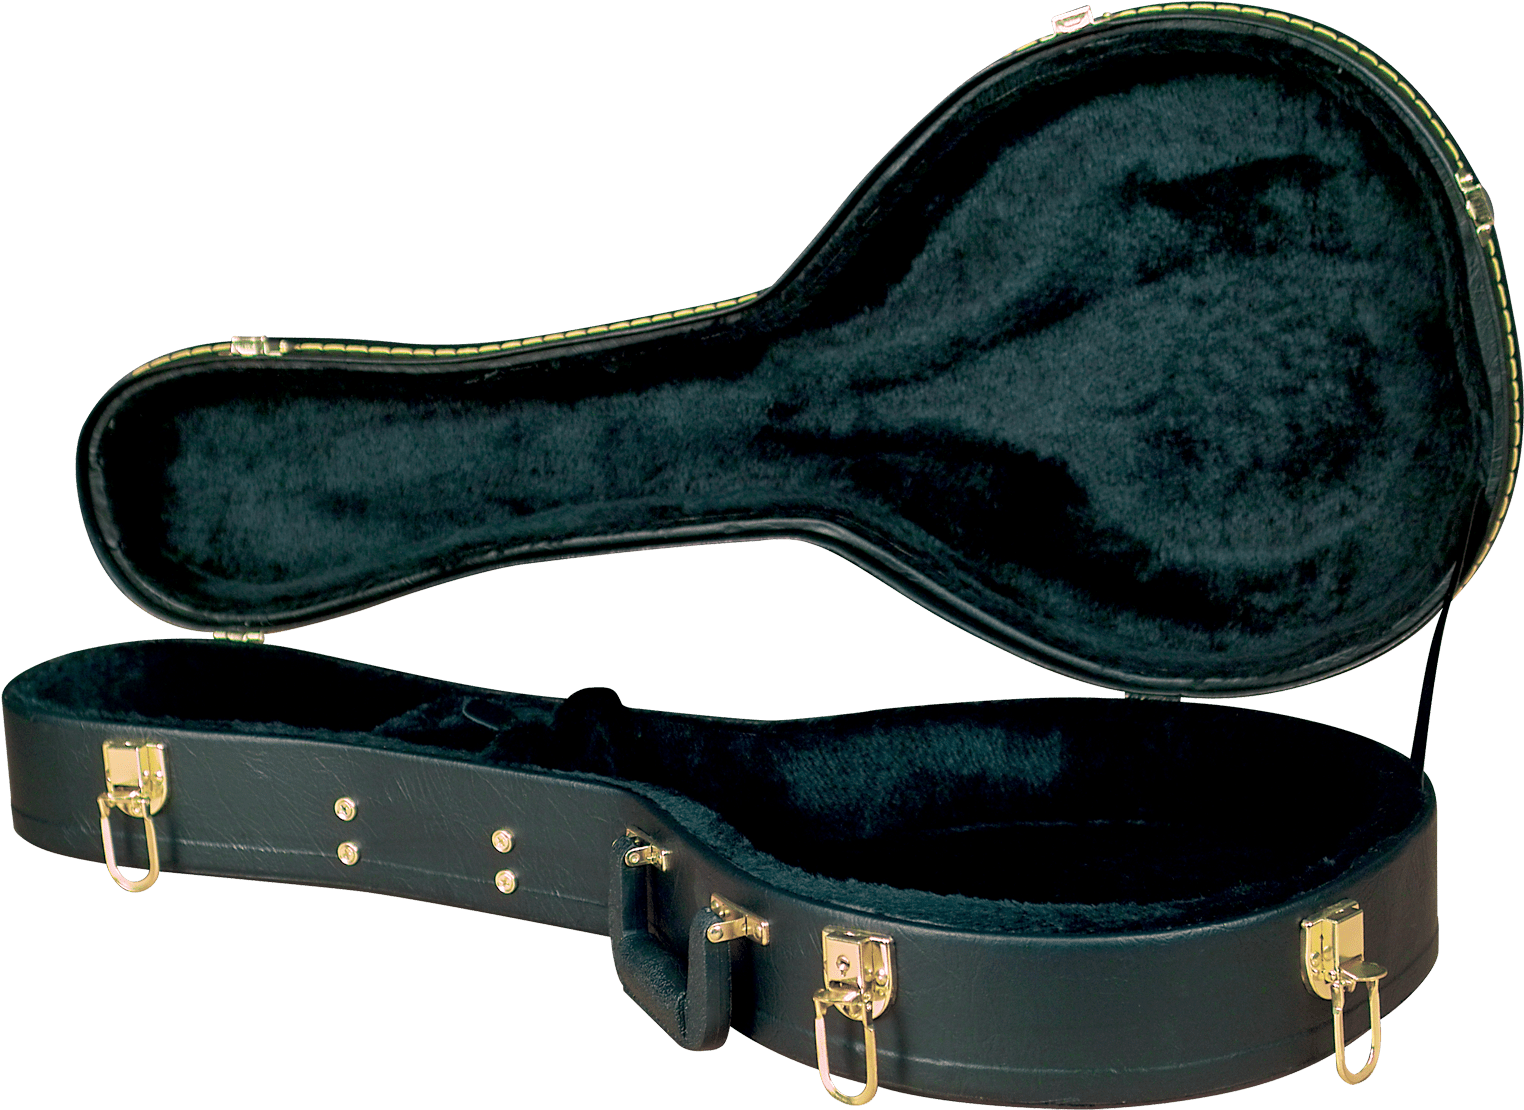 Mandolin Instrument PNG Transparent Image